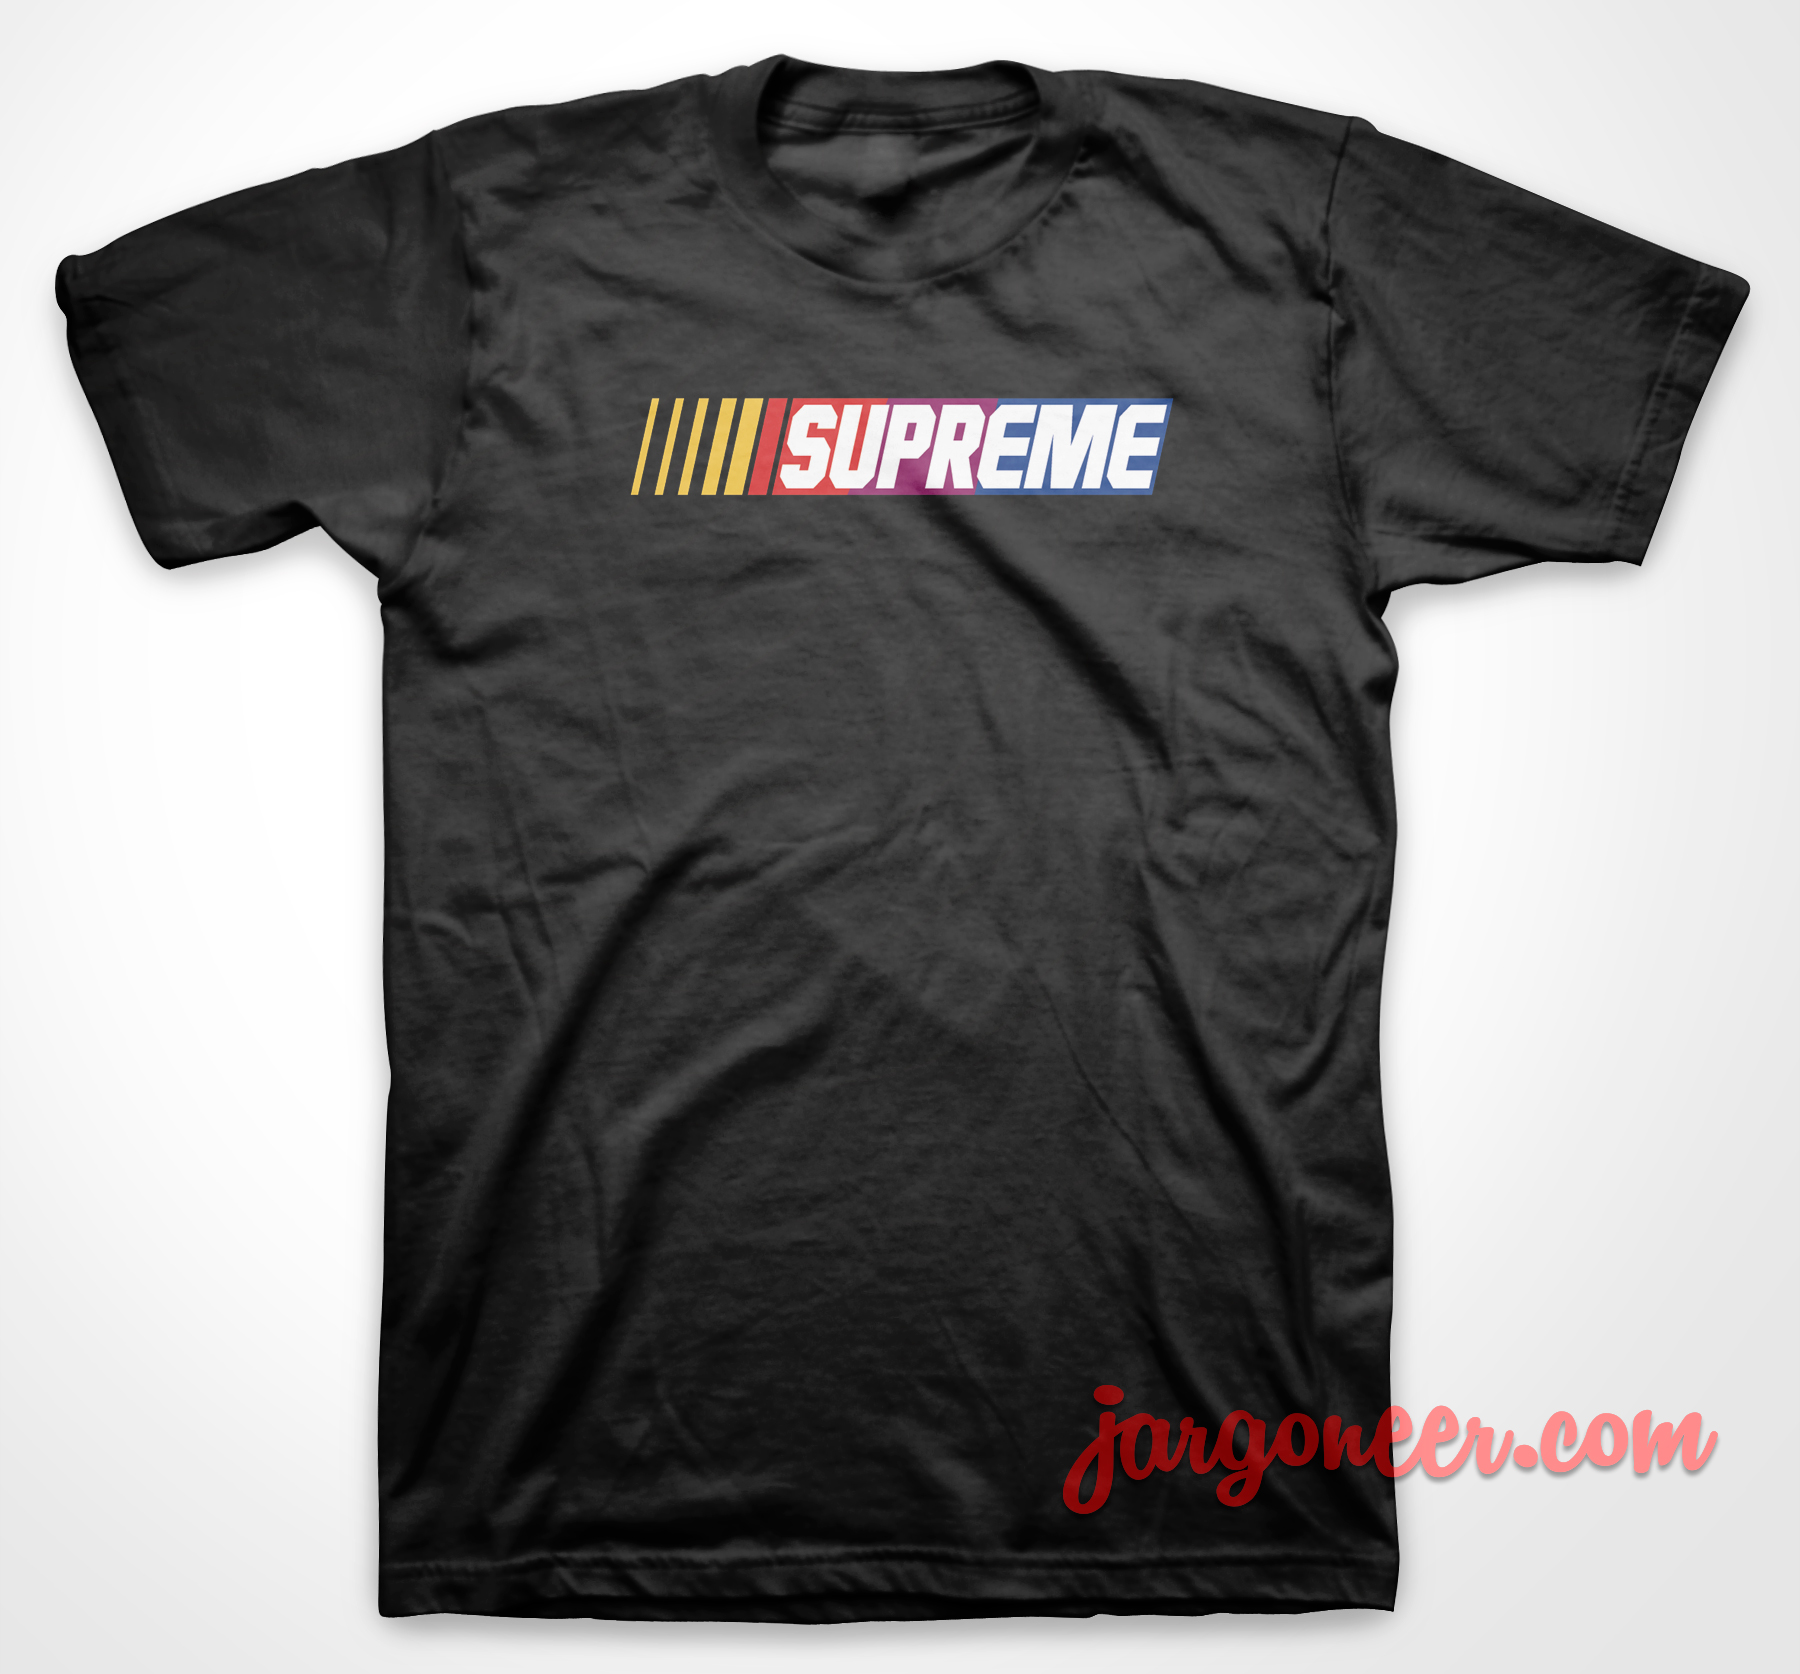 Supreme Nascar - Shop Unique Graphic Cool Shirt Designs